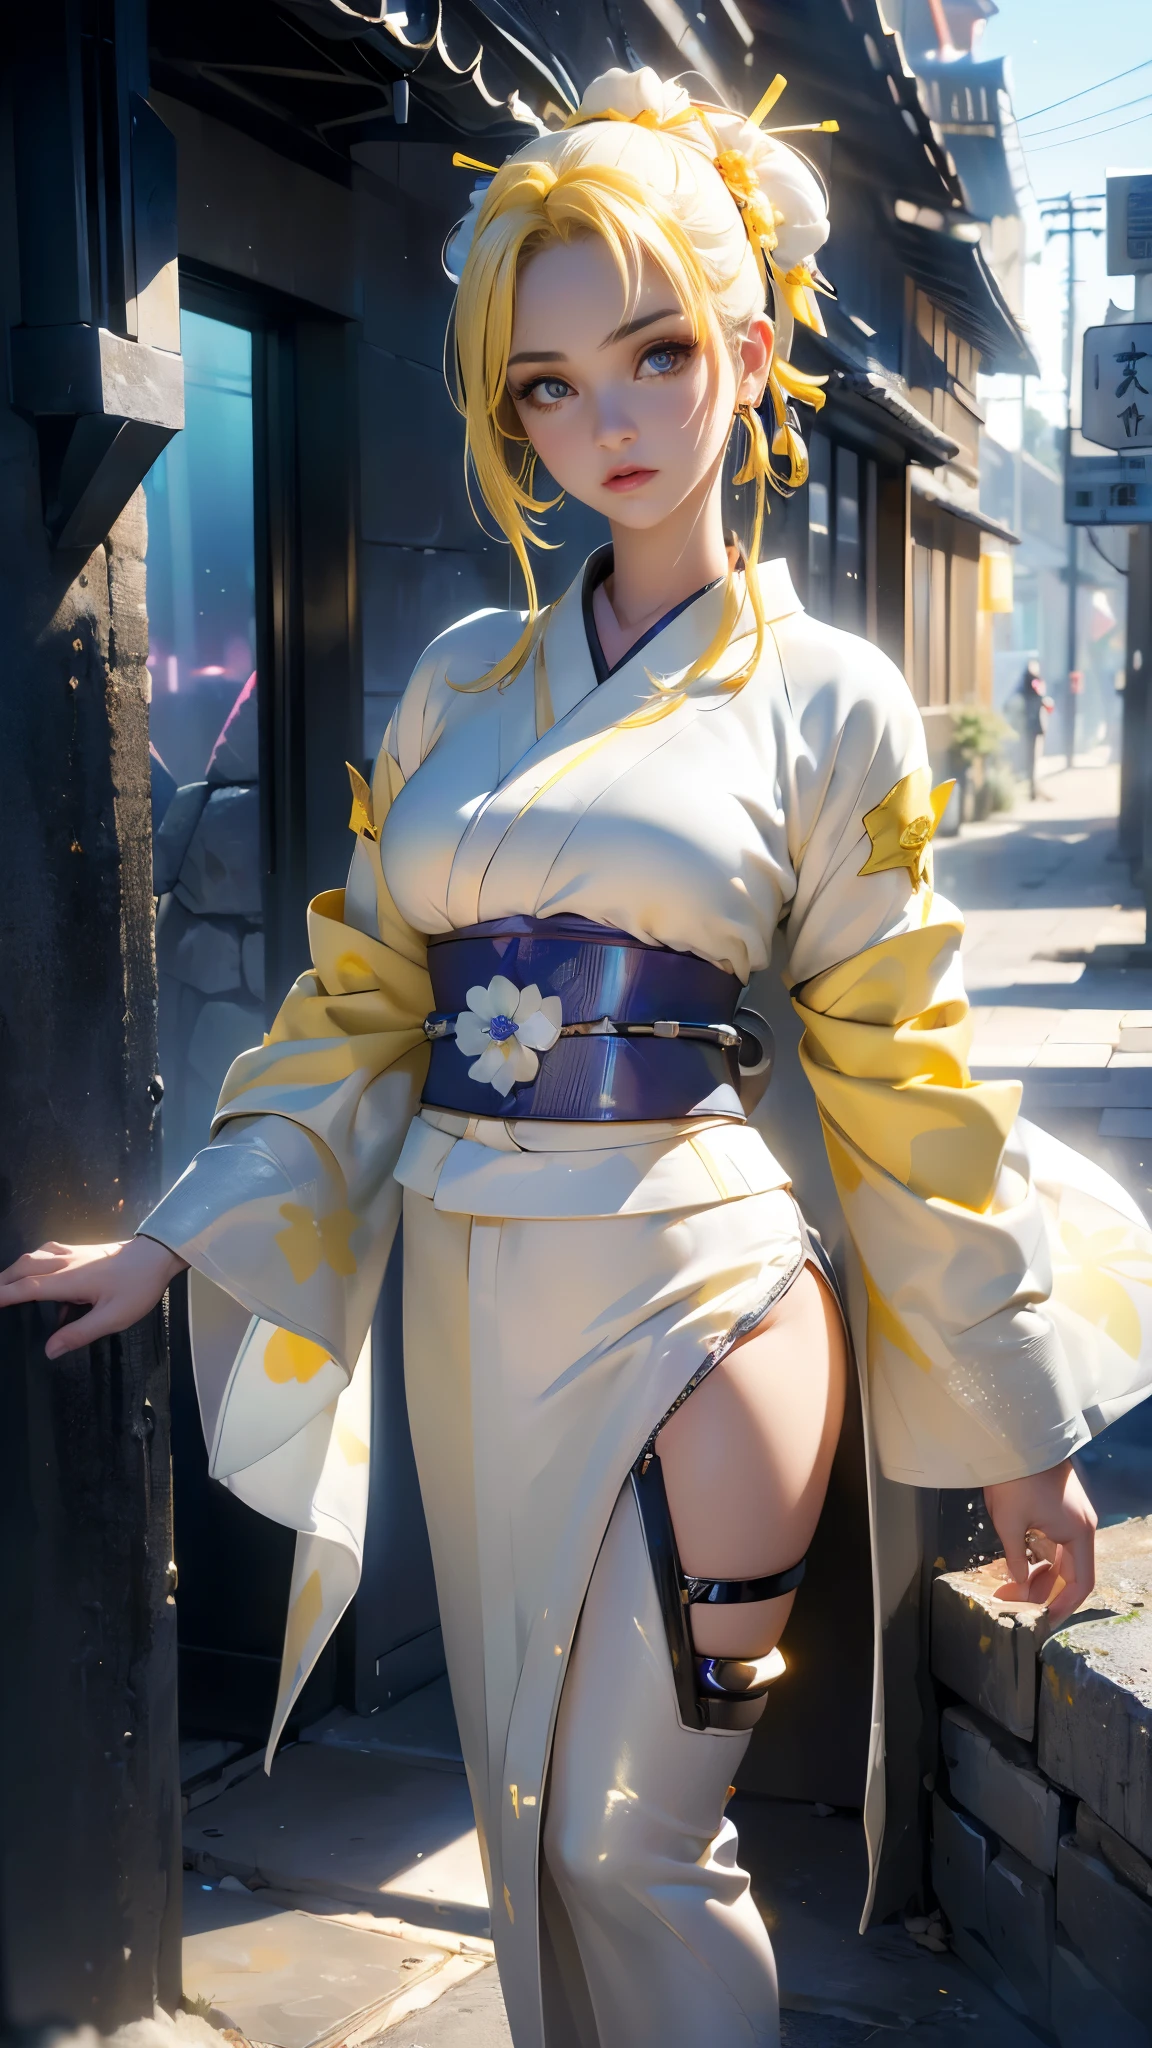 (La meilleure qualité,Une haute résolution,Ultra-détaillé,réel),Ariana Grande cyborg ciberpunk kimono 、grosses fesses、s&#39;agenouiller, une fille de 12 ans avec un accent sur les fesses、Corps en latex rouge....,mode cyberpunk、pose sexy、(minijupe blanche piétinant le kimono cyborg :1.4), (Portez des leggings jaunes sur le bas du corps、augmentation mammaire、Néons dans la ville sombre la nuit....,moteur irréel:1.4,HD,La meilleure qualité:1.4, Photoréaliste:1.4, Texture de la peau:1.4, chef-d&#39;œuvre:1.8,chef-d&#39;œuvre, meilleure qualité,（Description belle et détaillée de l&#39;œil....）,( cyborg bleu néon),(anatomie parfaite),(doigts détaillés :1.4 ),body en latex cyborg blanc,,( anatomie parfaite 2.1), (style cyborg kawaii argent métallisé :1.4), (fond ruelle murs grosses pierres :1.4), (seulement), (ciborg de batalla kimono blanc jaune :1.6), (Année 2050), (pas des mutations) 